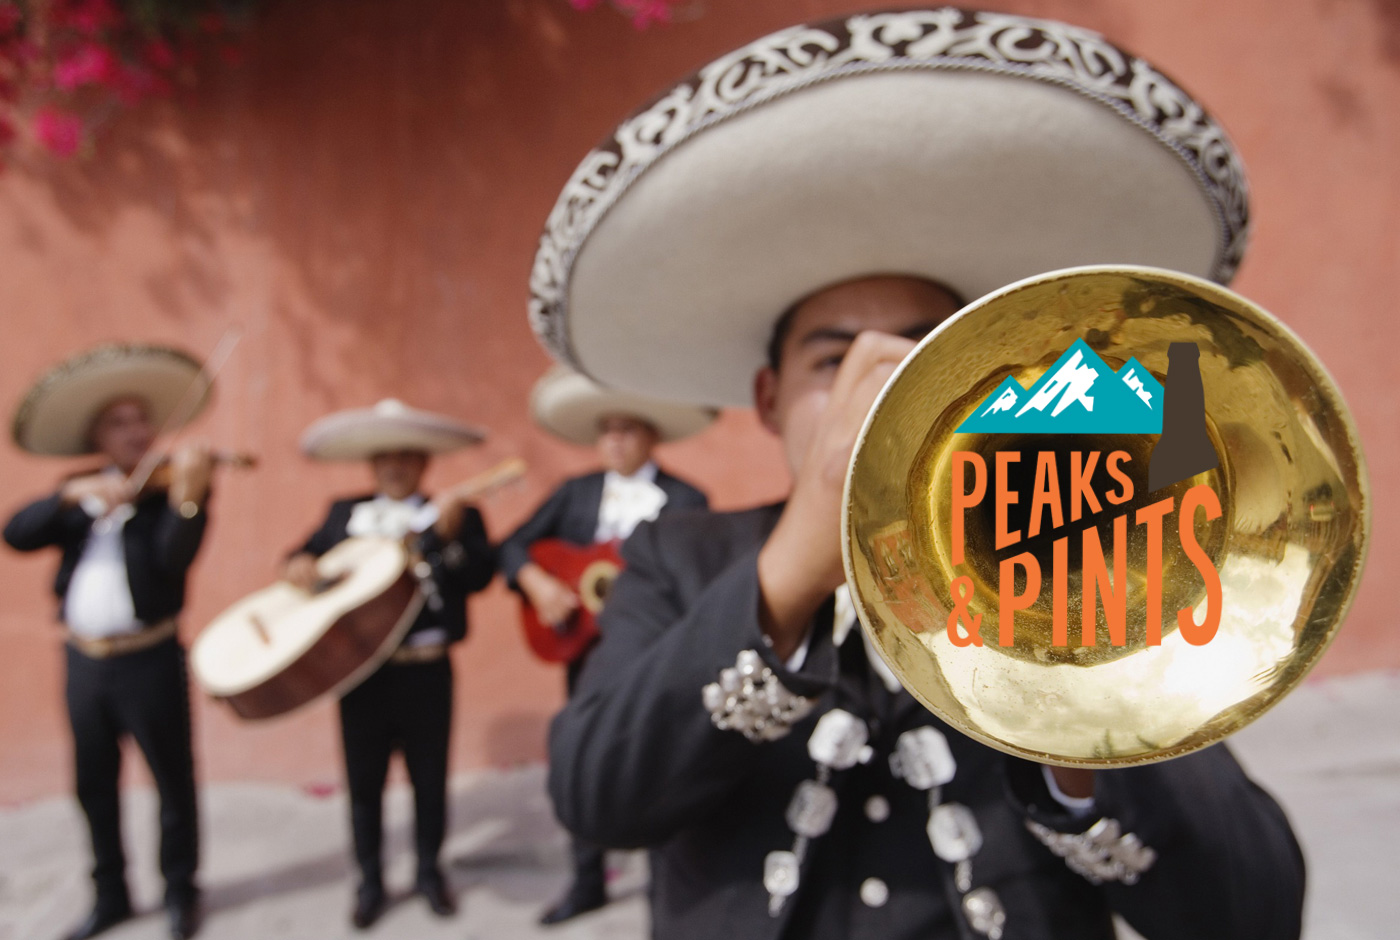 Peaks-and-Pints-Cuatro-de-Mayo-Facebook-calendar